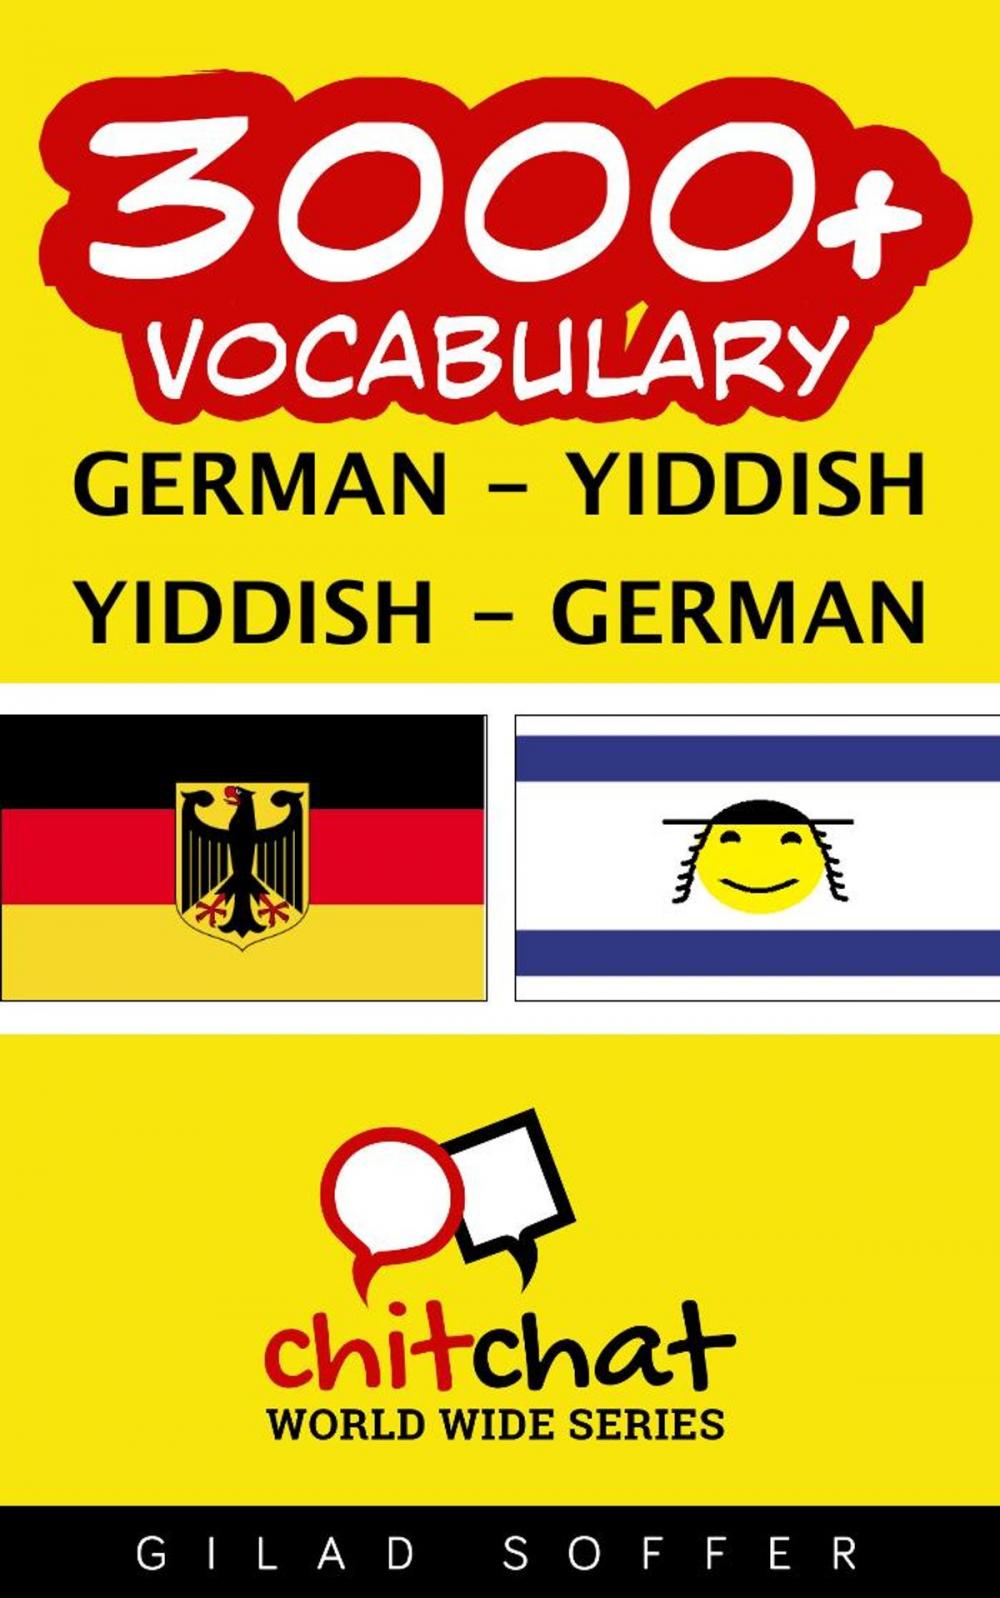 Big bigCover of 3000+ Vocabulary German - Yiddish